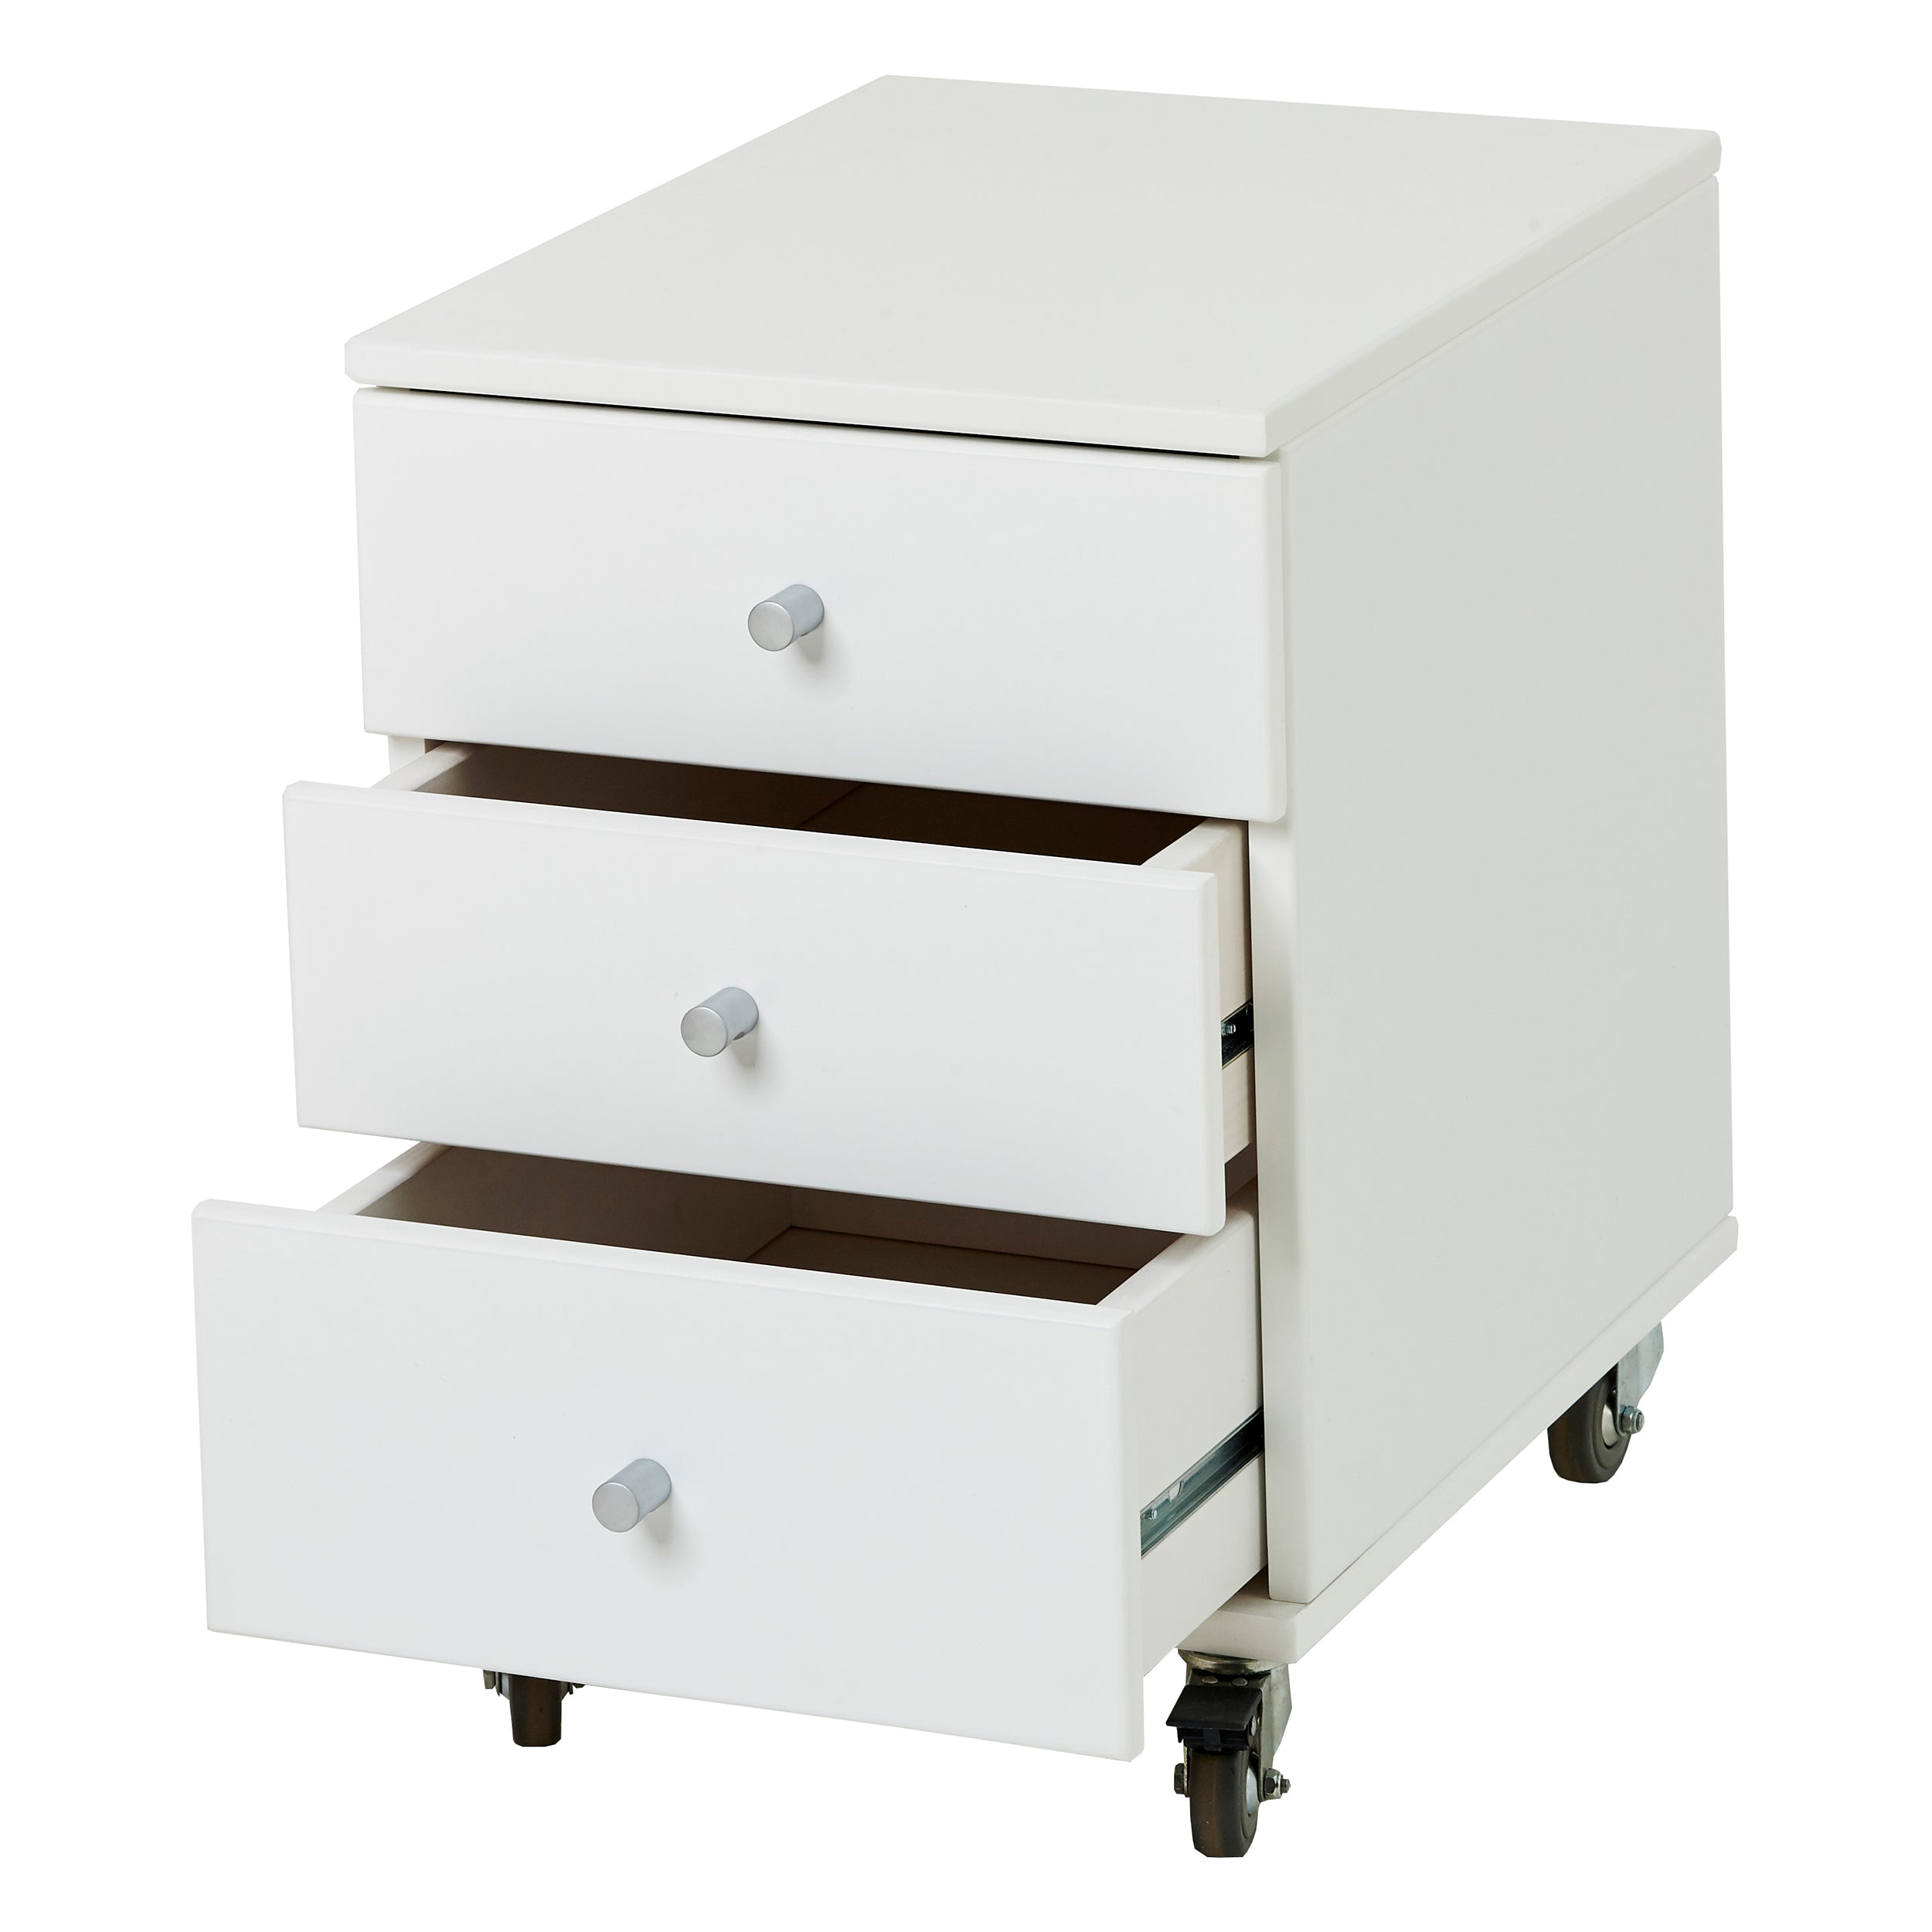 Hoppekids JONAS Drawer Set with 3 drawers, White